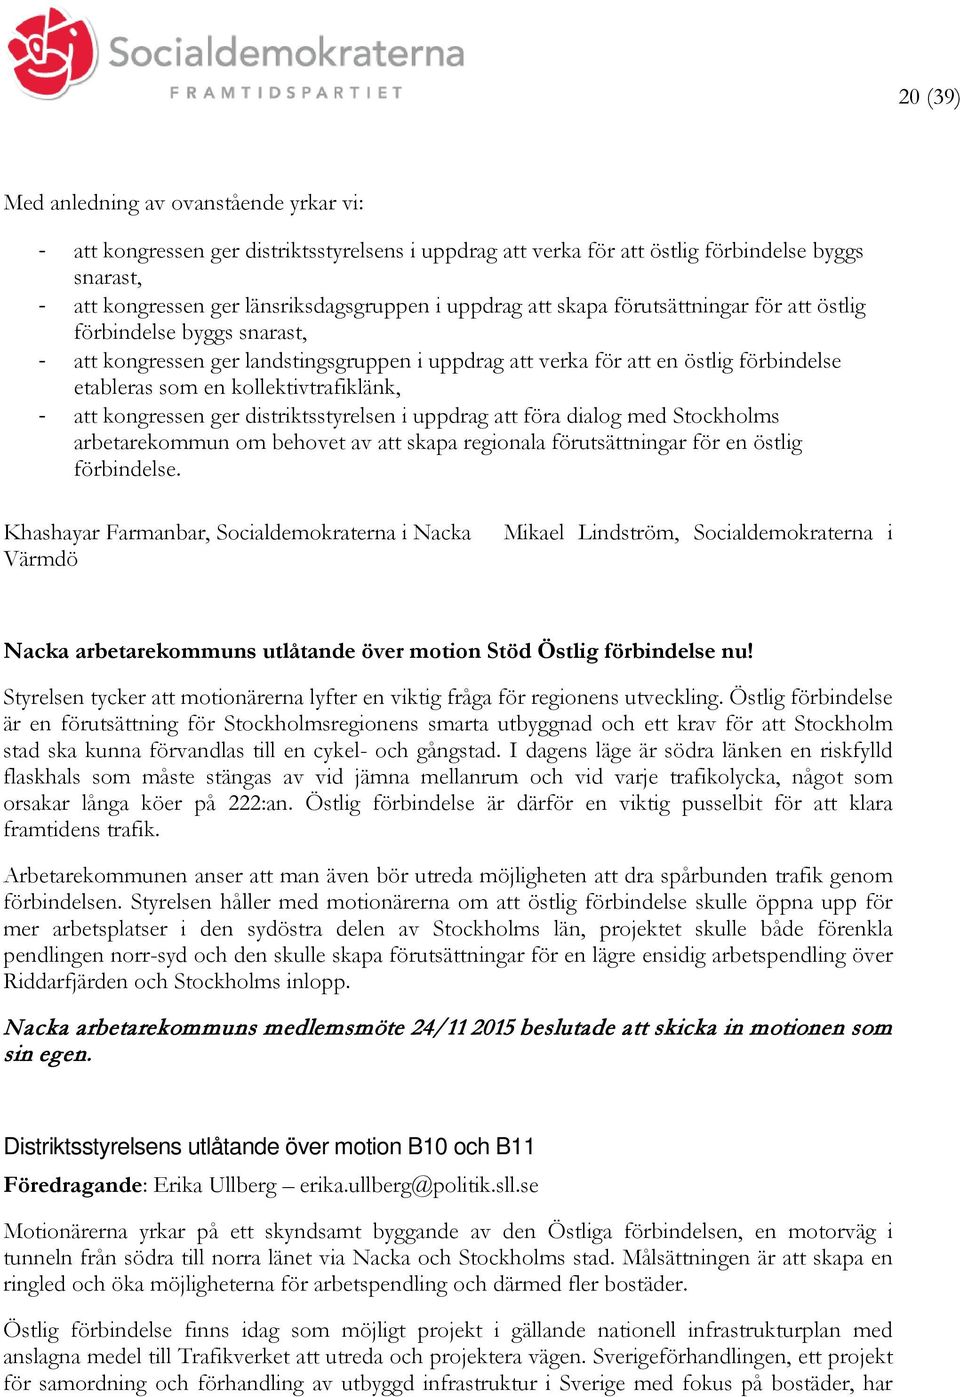 kollektivtrafiklänk, - att kongressen ger distriktsstyrelsen i uppdrag att föra dialog med Stockholms arbetarekommun om behovet av att skapa regionala förutsättningar för en östlig förbindelse.